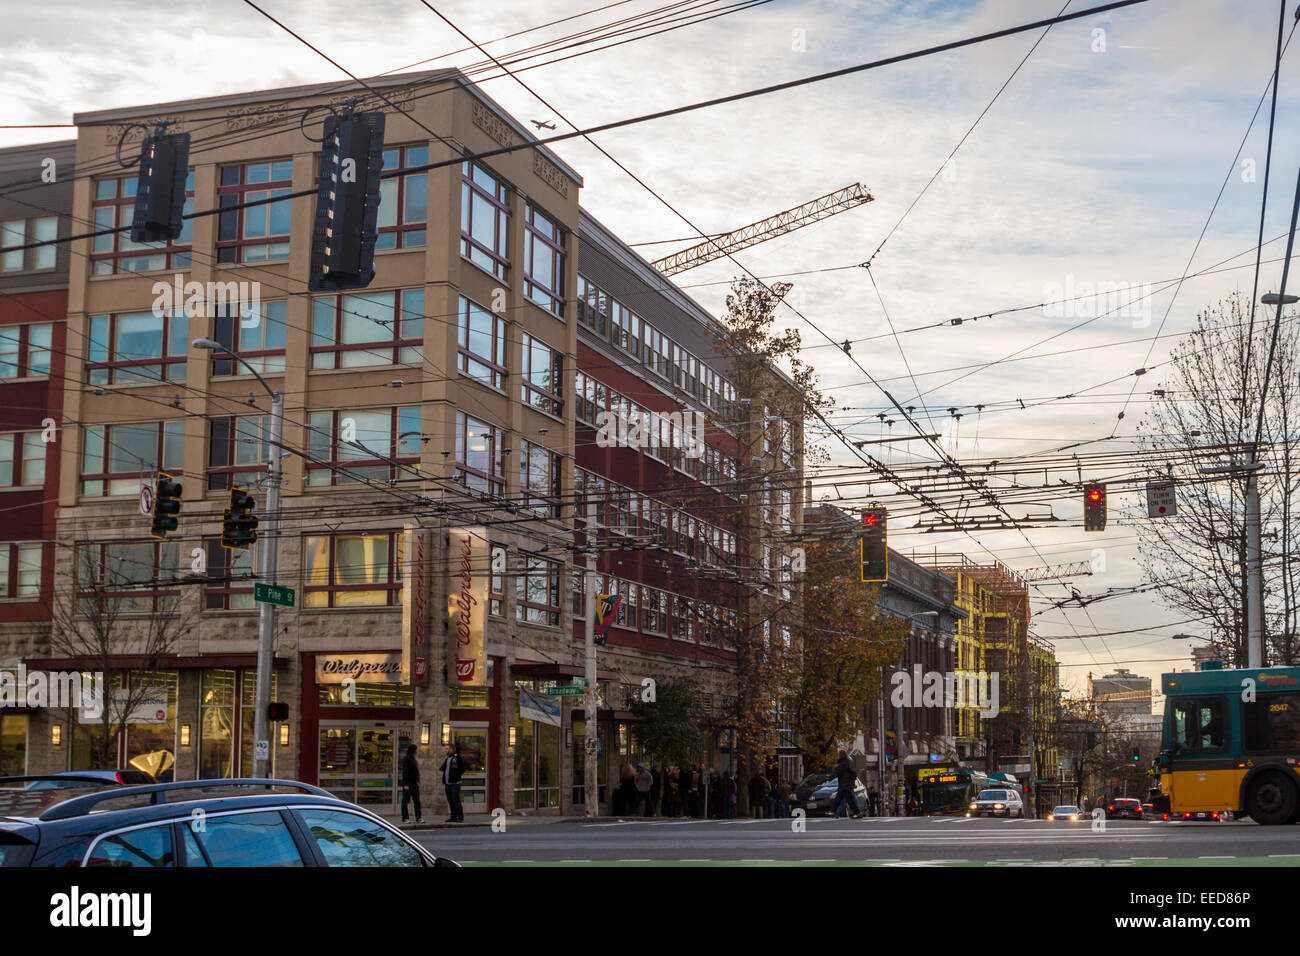 Una escena callejera en el barrio de Capitol Hill de Seattle, en la intersección de Broadway y Pine Street. Foto de stock